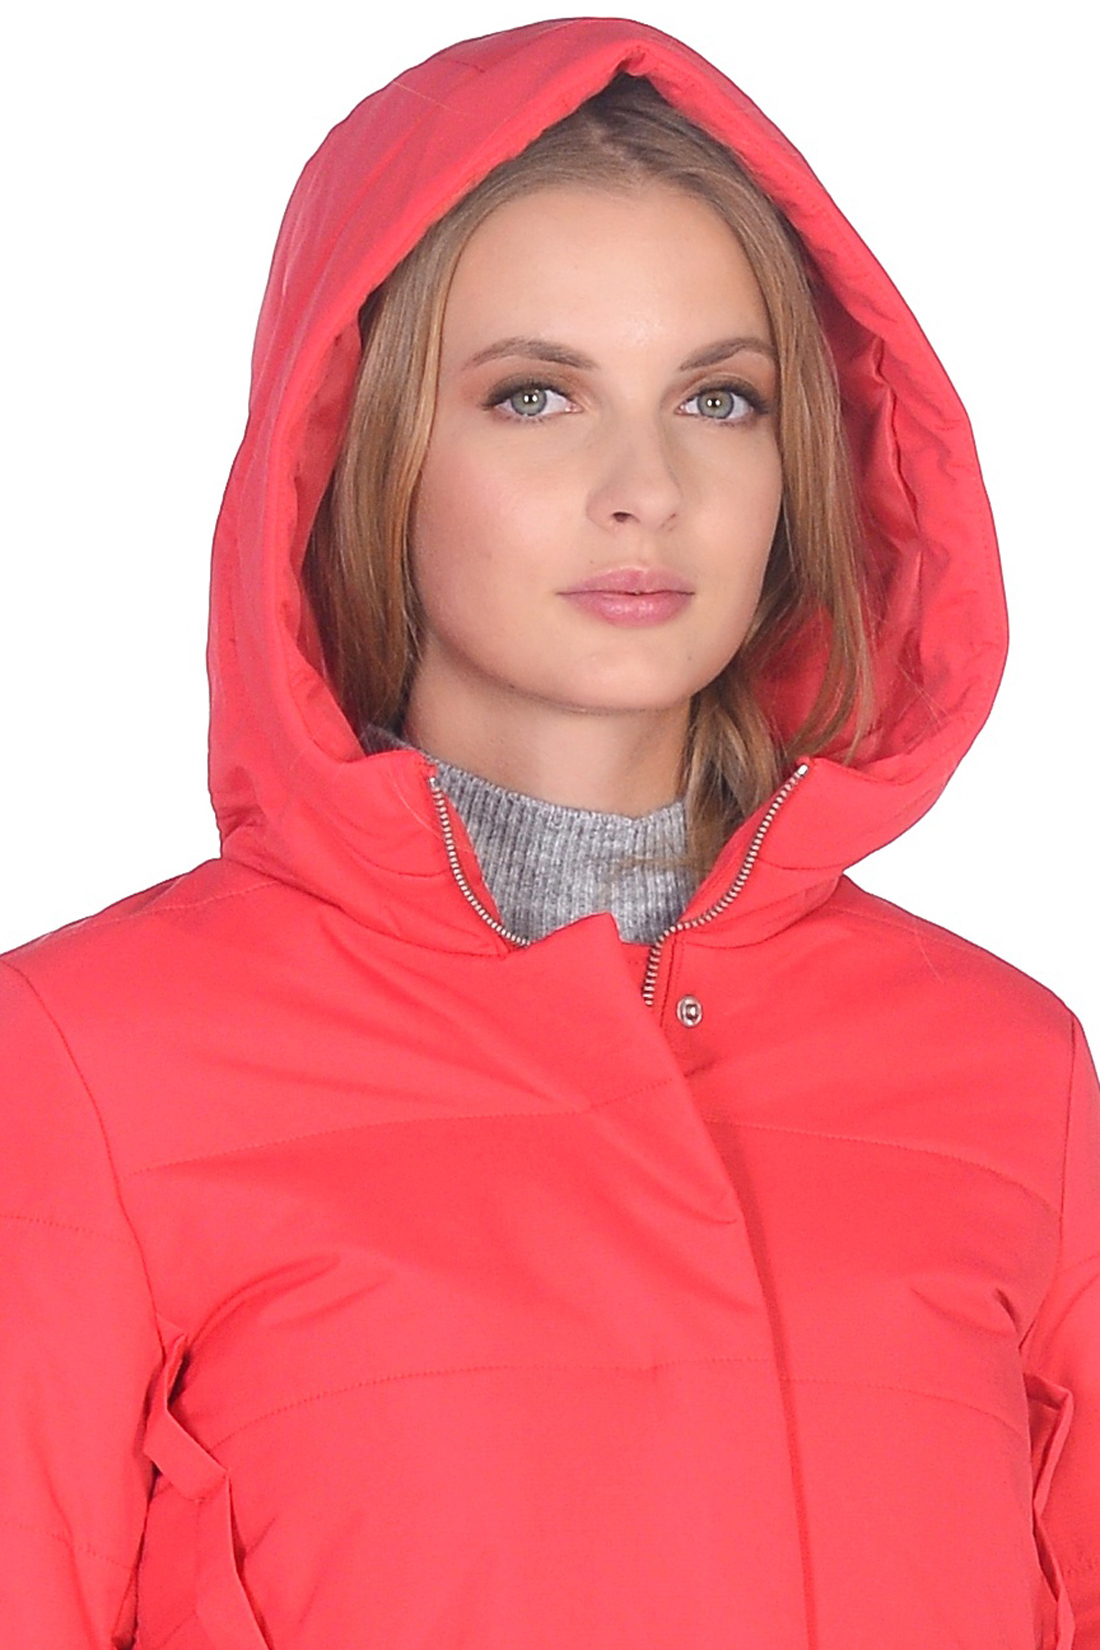 Куртка-трапеция с капюшоном (арт. baon B039047), размер L, цвет красный Куртка-трапеция с капюшоном (арт. baon B039047) - фото 3